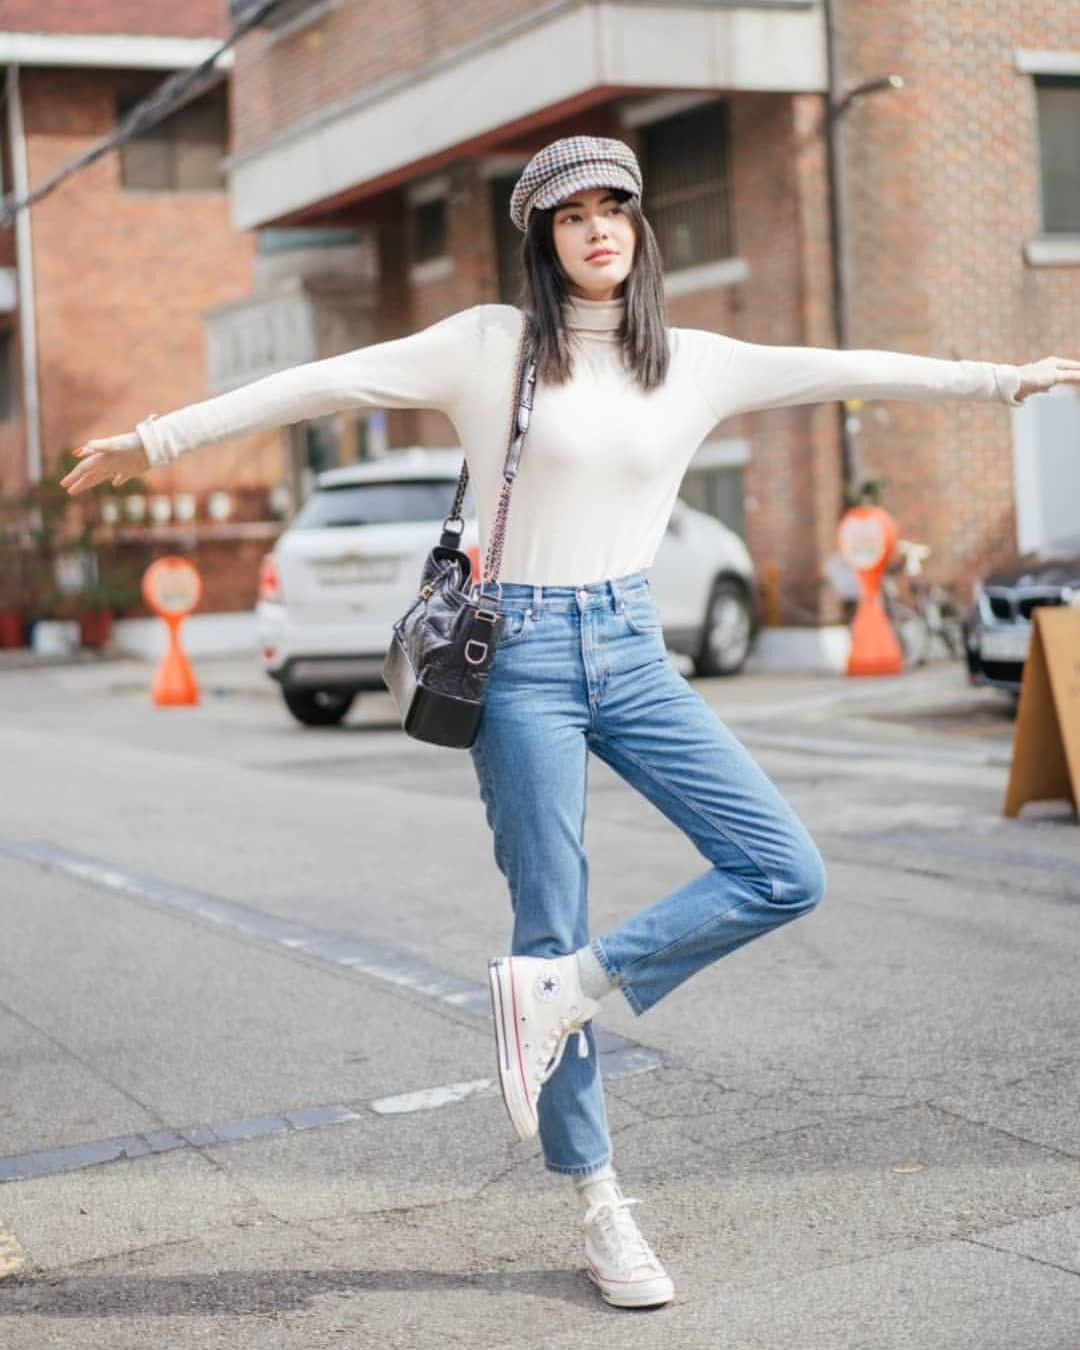 Học lỏm mỹ nhân người Thái cách diện quần jeans: Kín chân nhưng vẫn khoe dáng đẹp bất chấp-15